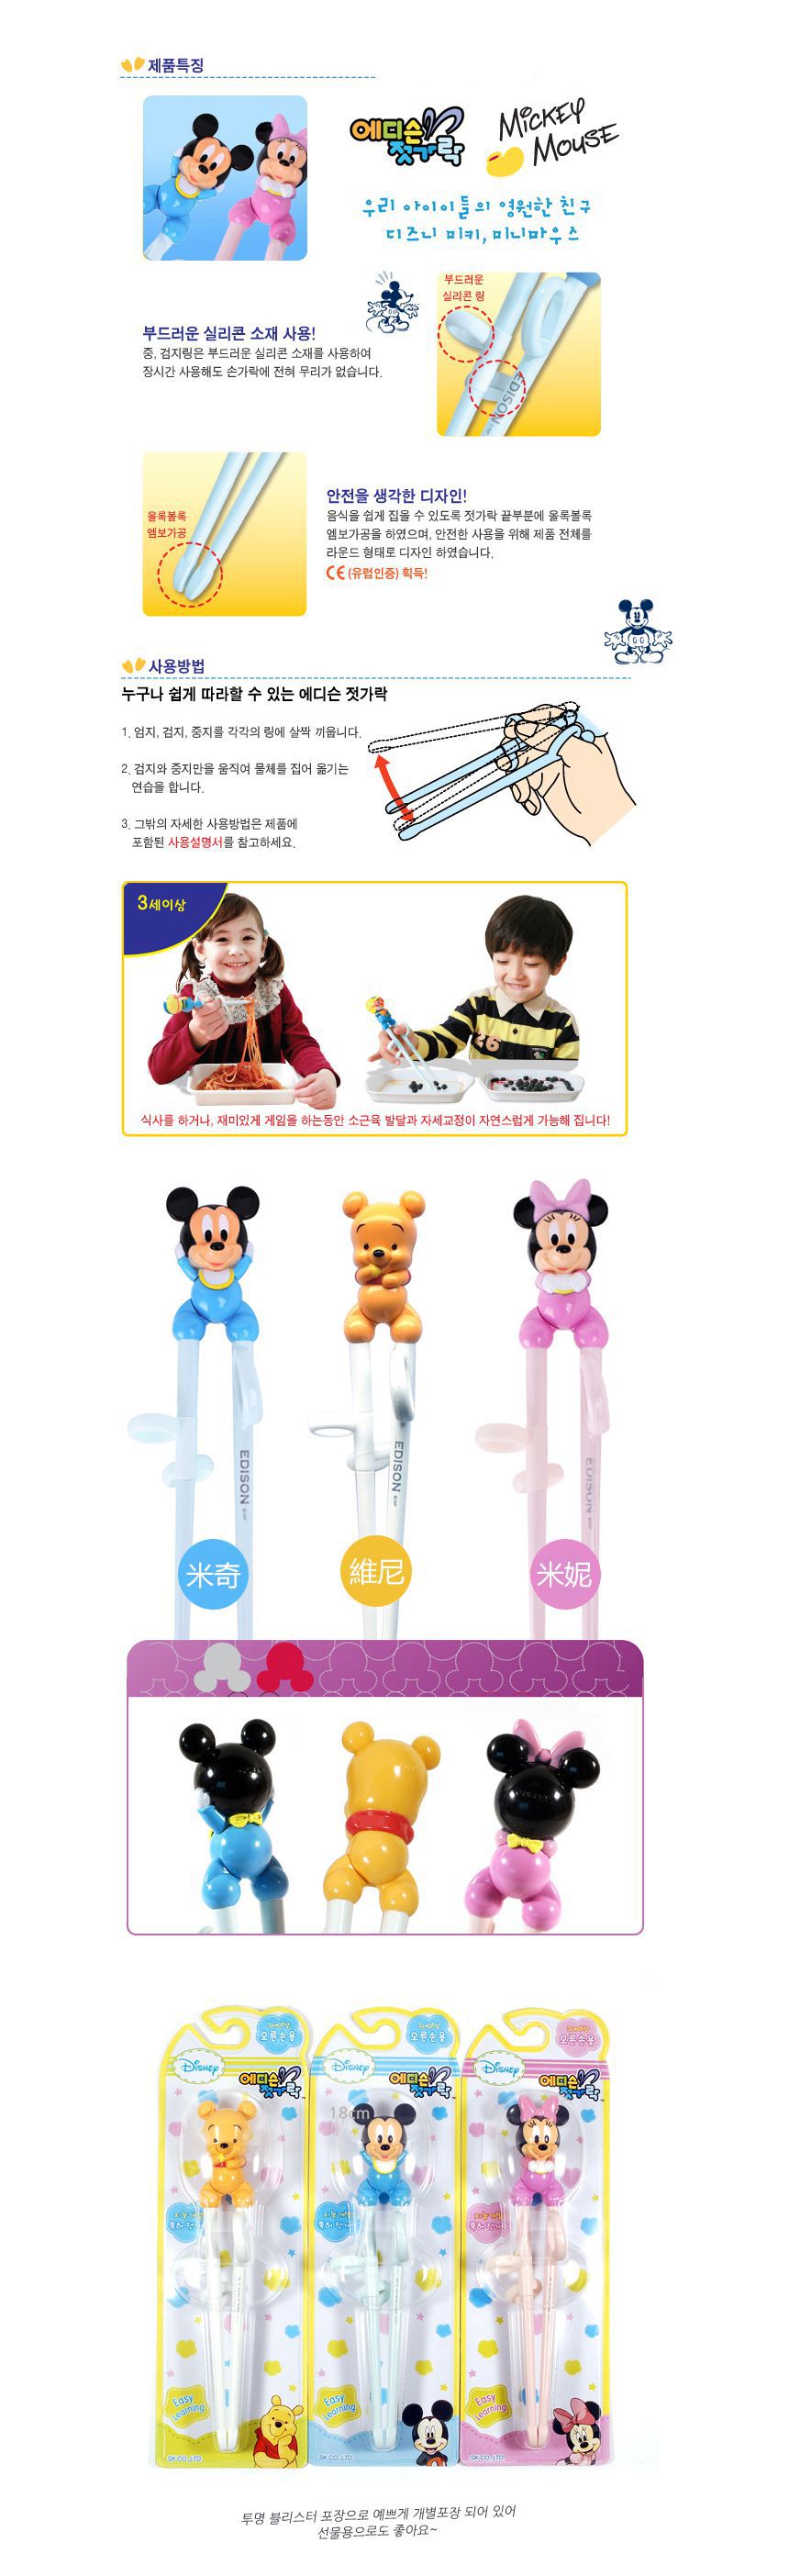 韓國製DISNEY立體卡通人物系列兒童學習筷